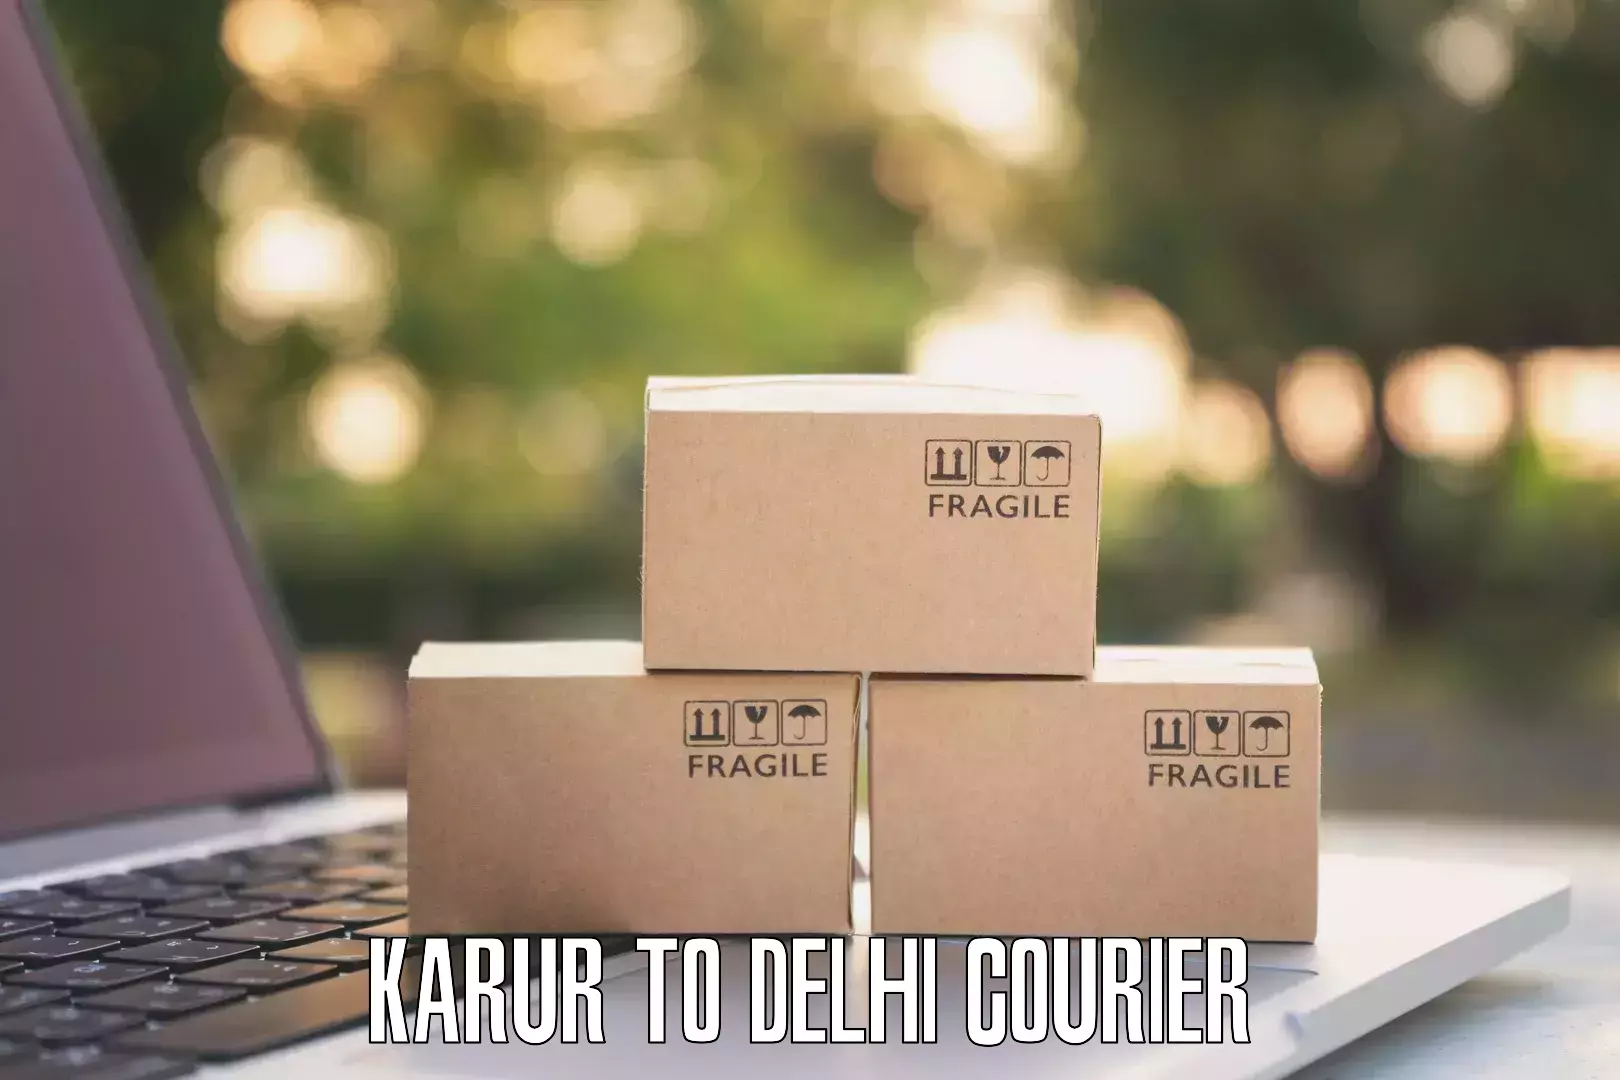 Courier service comparison Karur to University of Delhi